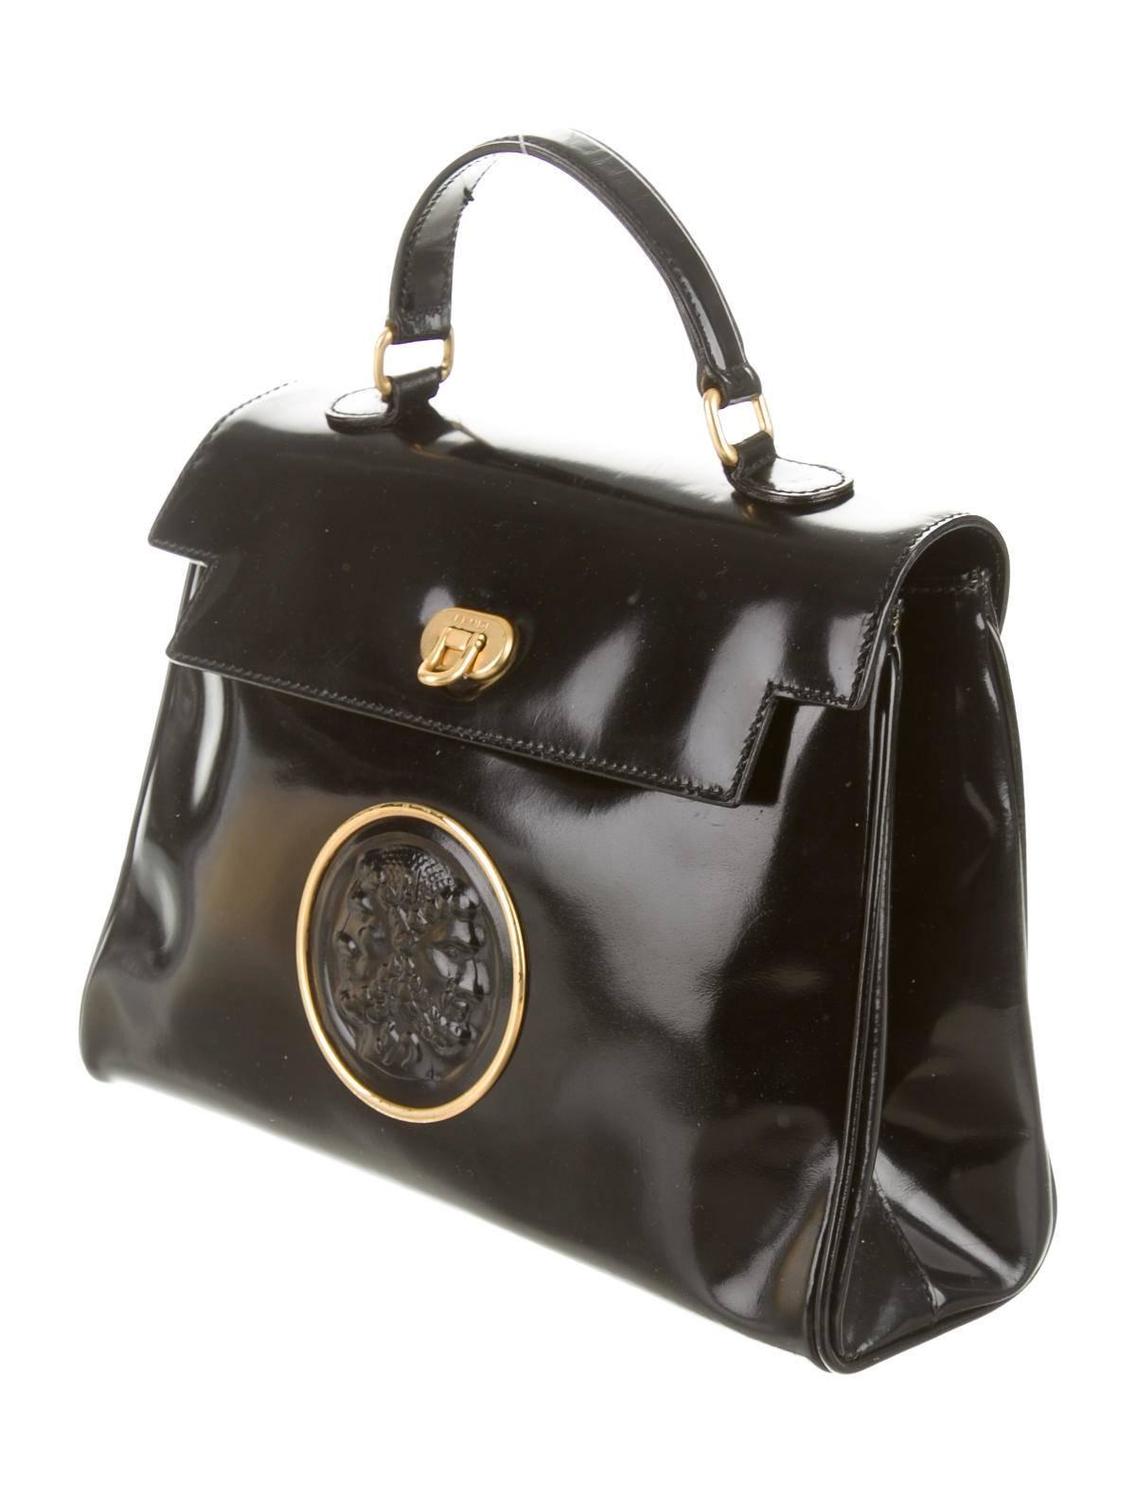 Fendi Vintage Black Leather Gold Hardware Satchel Crossbody Shoulder Bag at 1stdibs